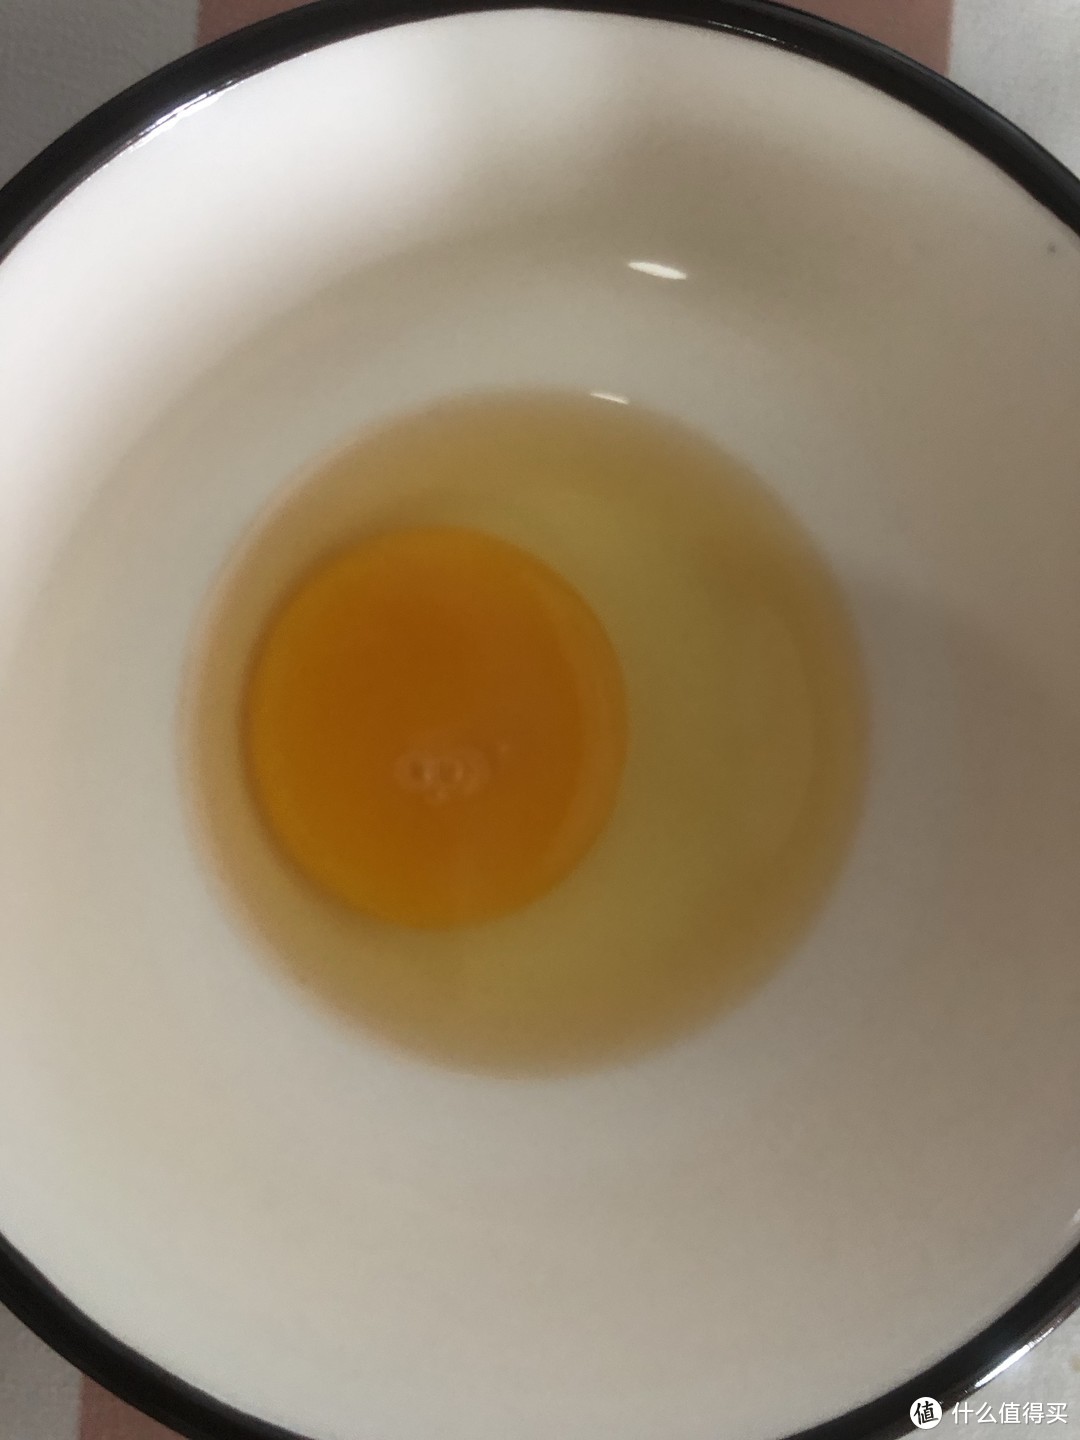 鸡蛋是一种非常有营养的蛋白质